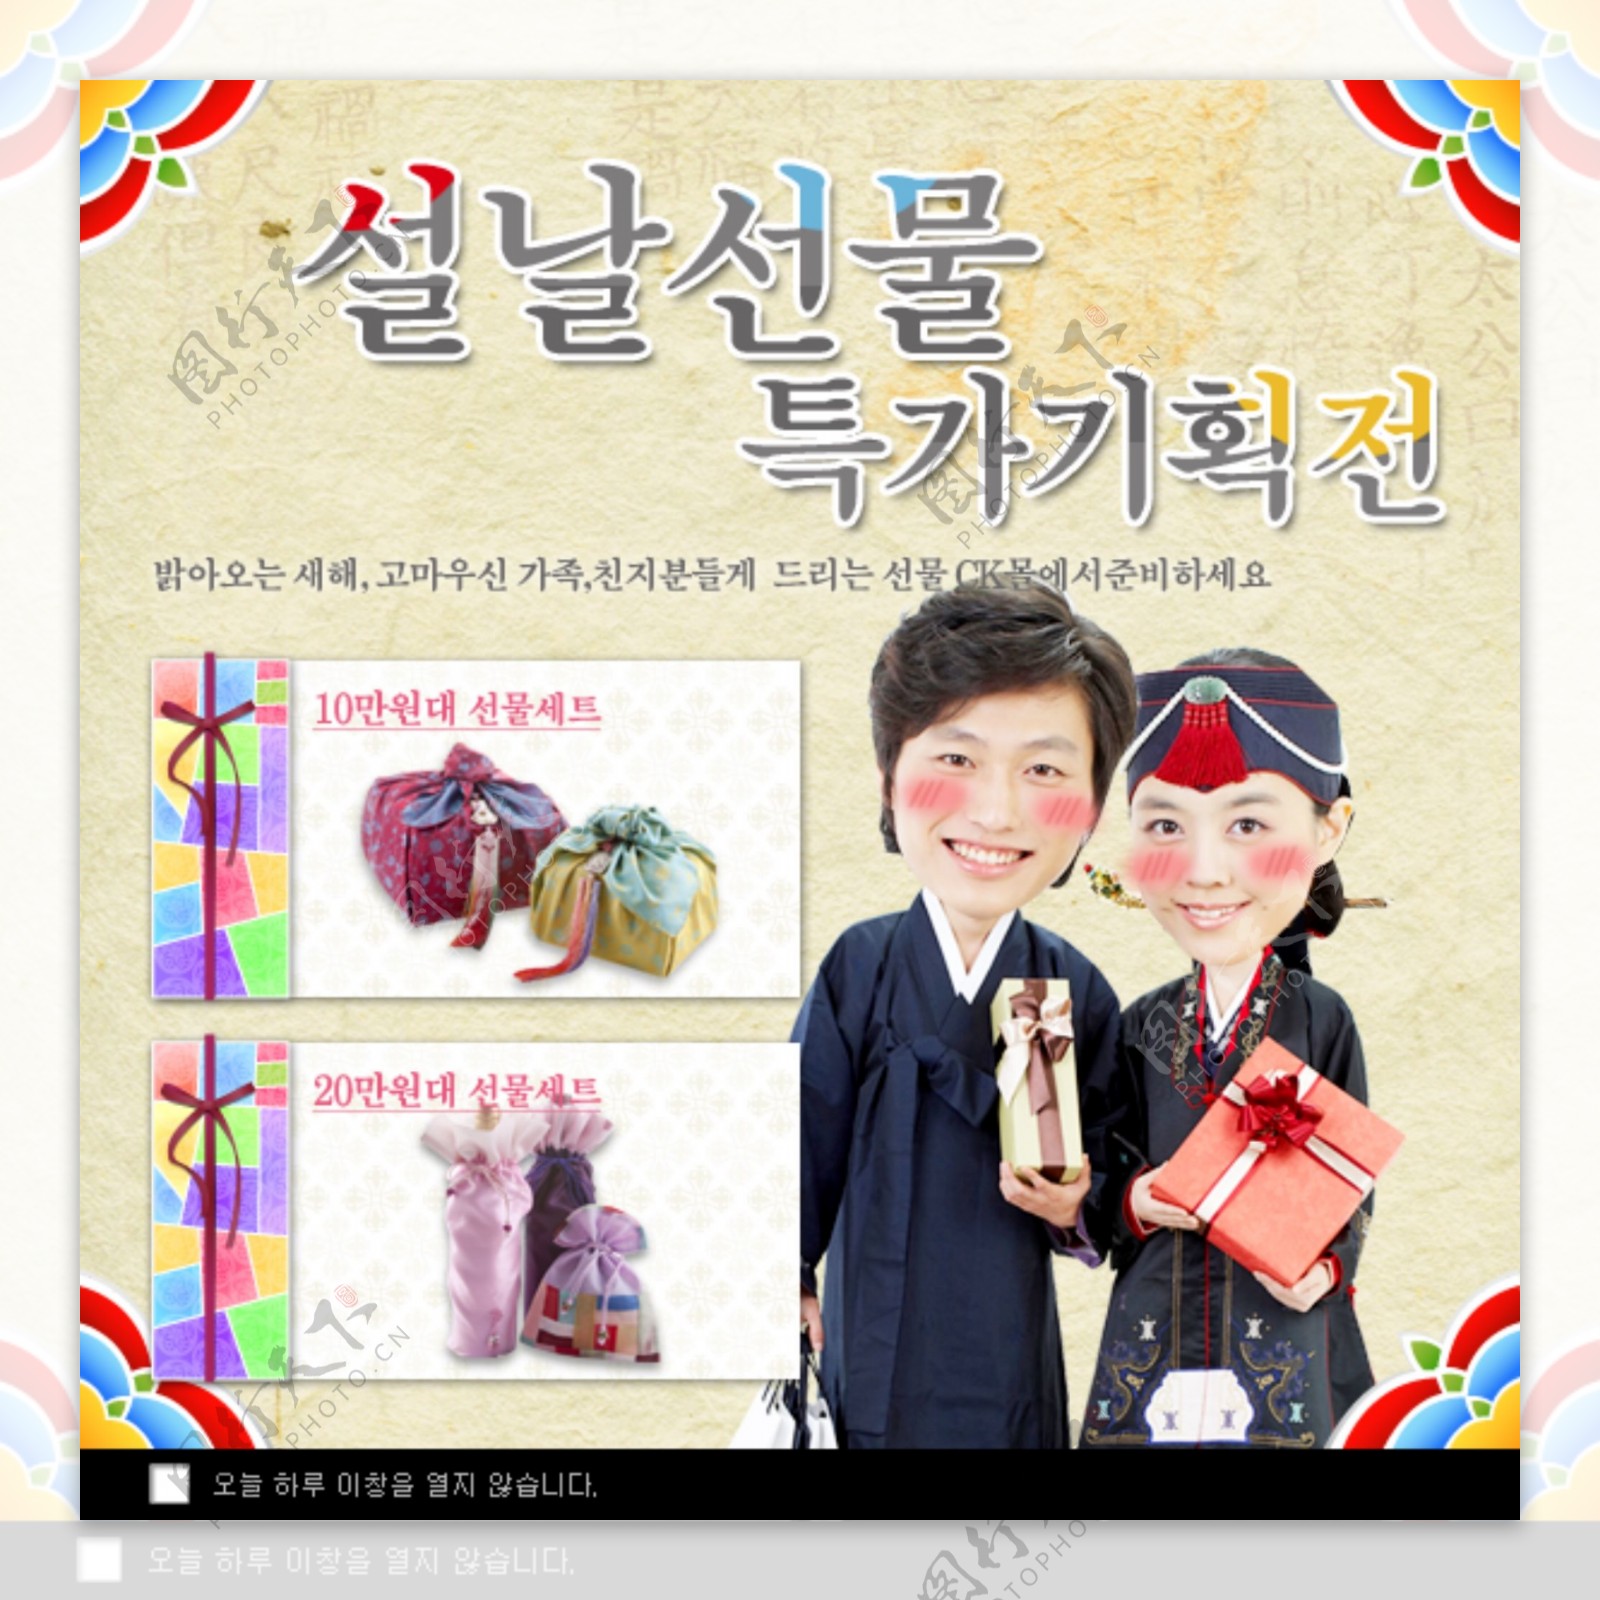 韩国婚礼专题页面图片